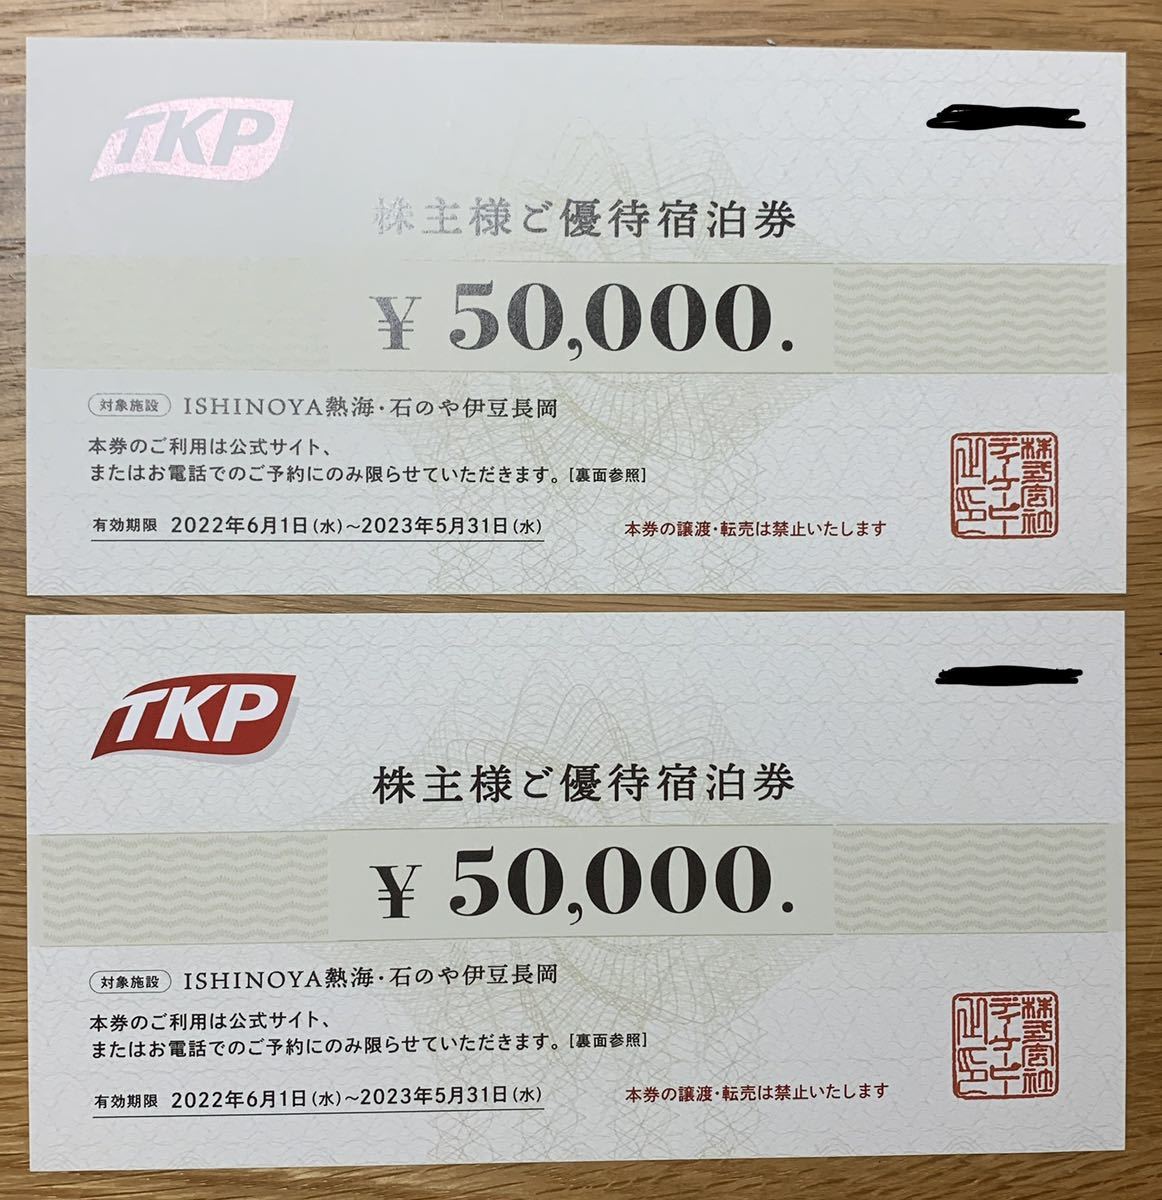 チケット TKP 25,000円分 4NYcz-m51577764737 株主優待 チケット